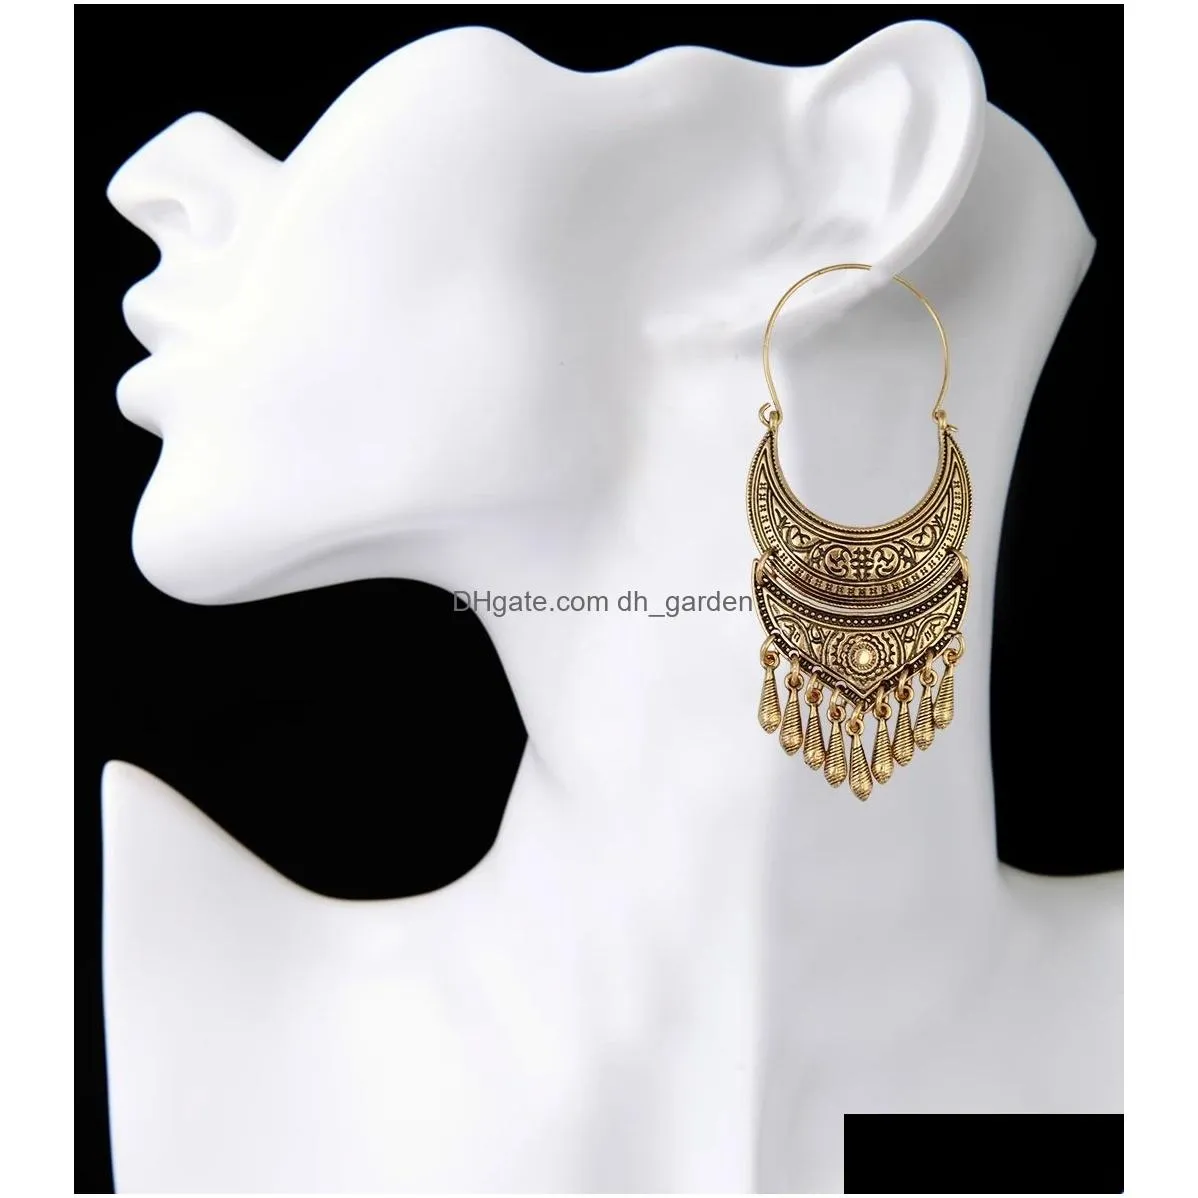 Bohemian Vintage Style Sun Flower Carved Fashion Hoop Earrings with Alloy Bead Dangle Drop Earrings For Women Jewelry